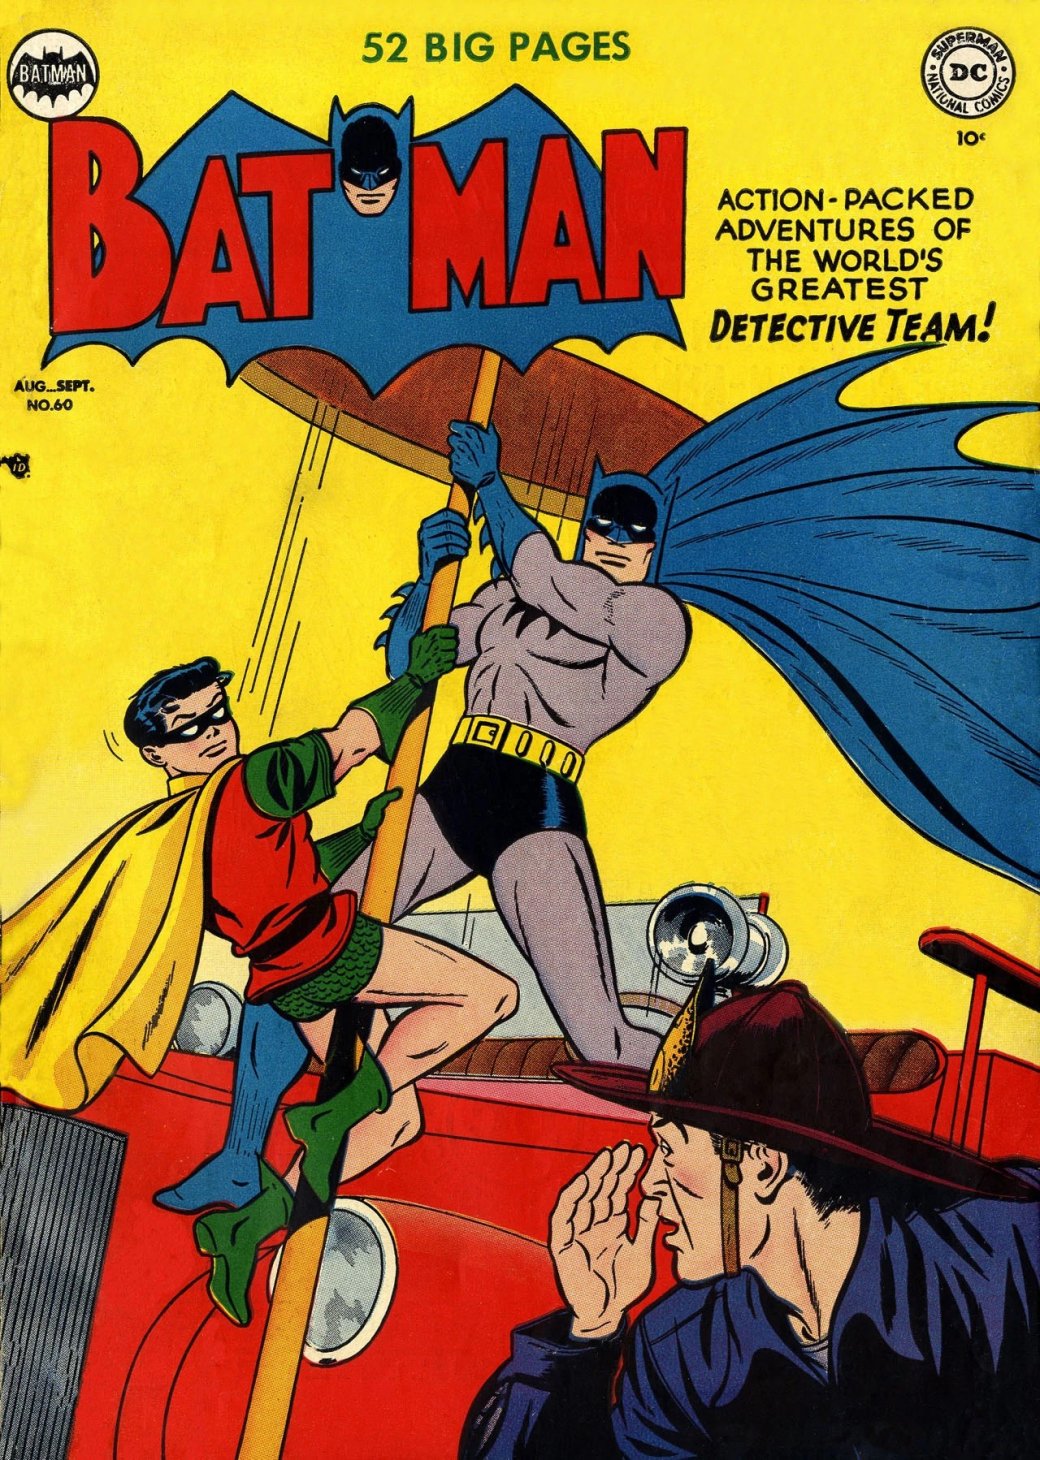 Галерея История Бэтмена в комиксах — вспоминаем путь Темного рыцаря в честь его юбилея - 1 фото